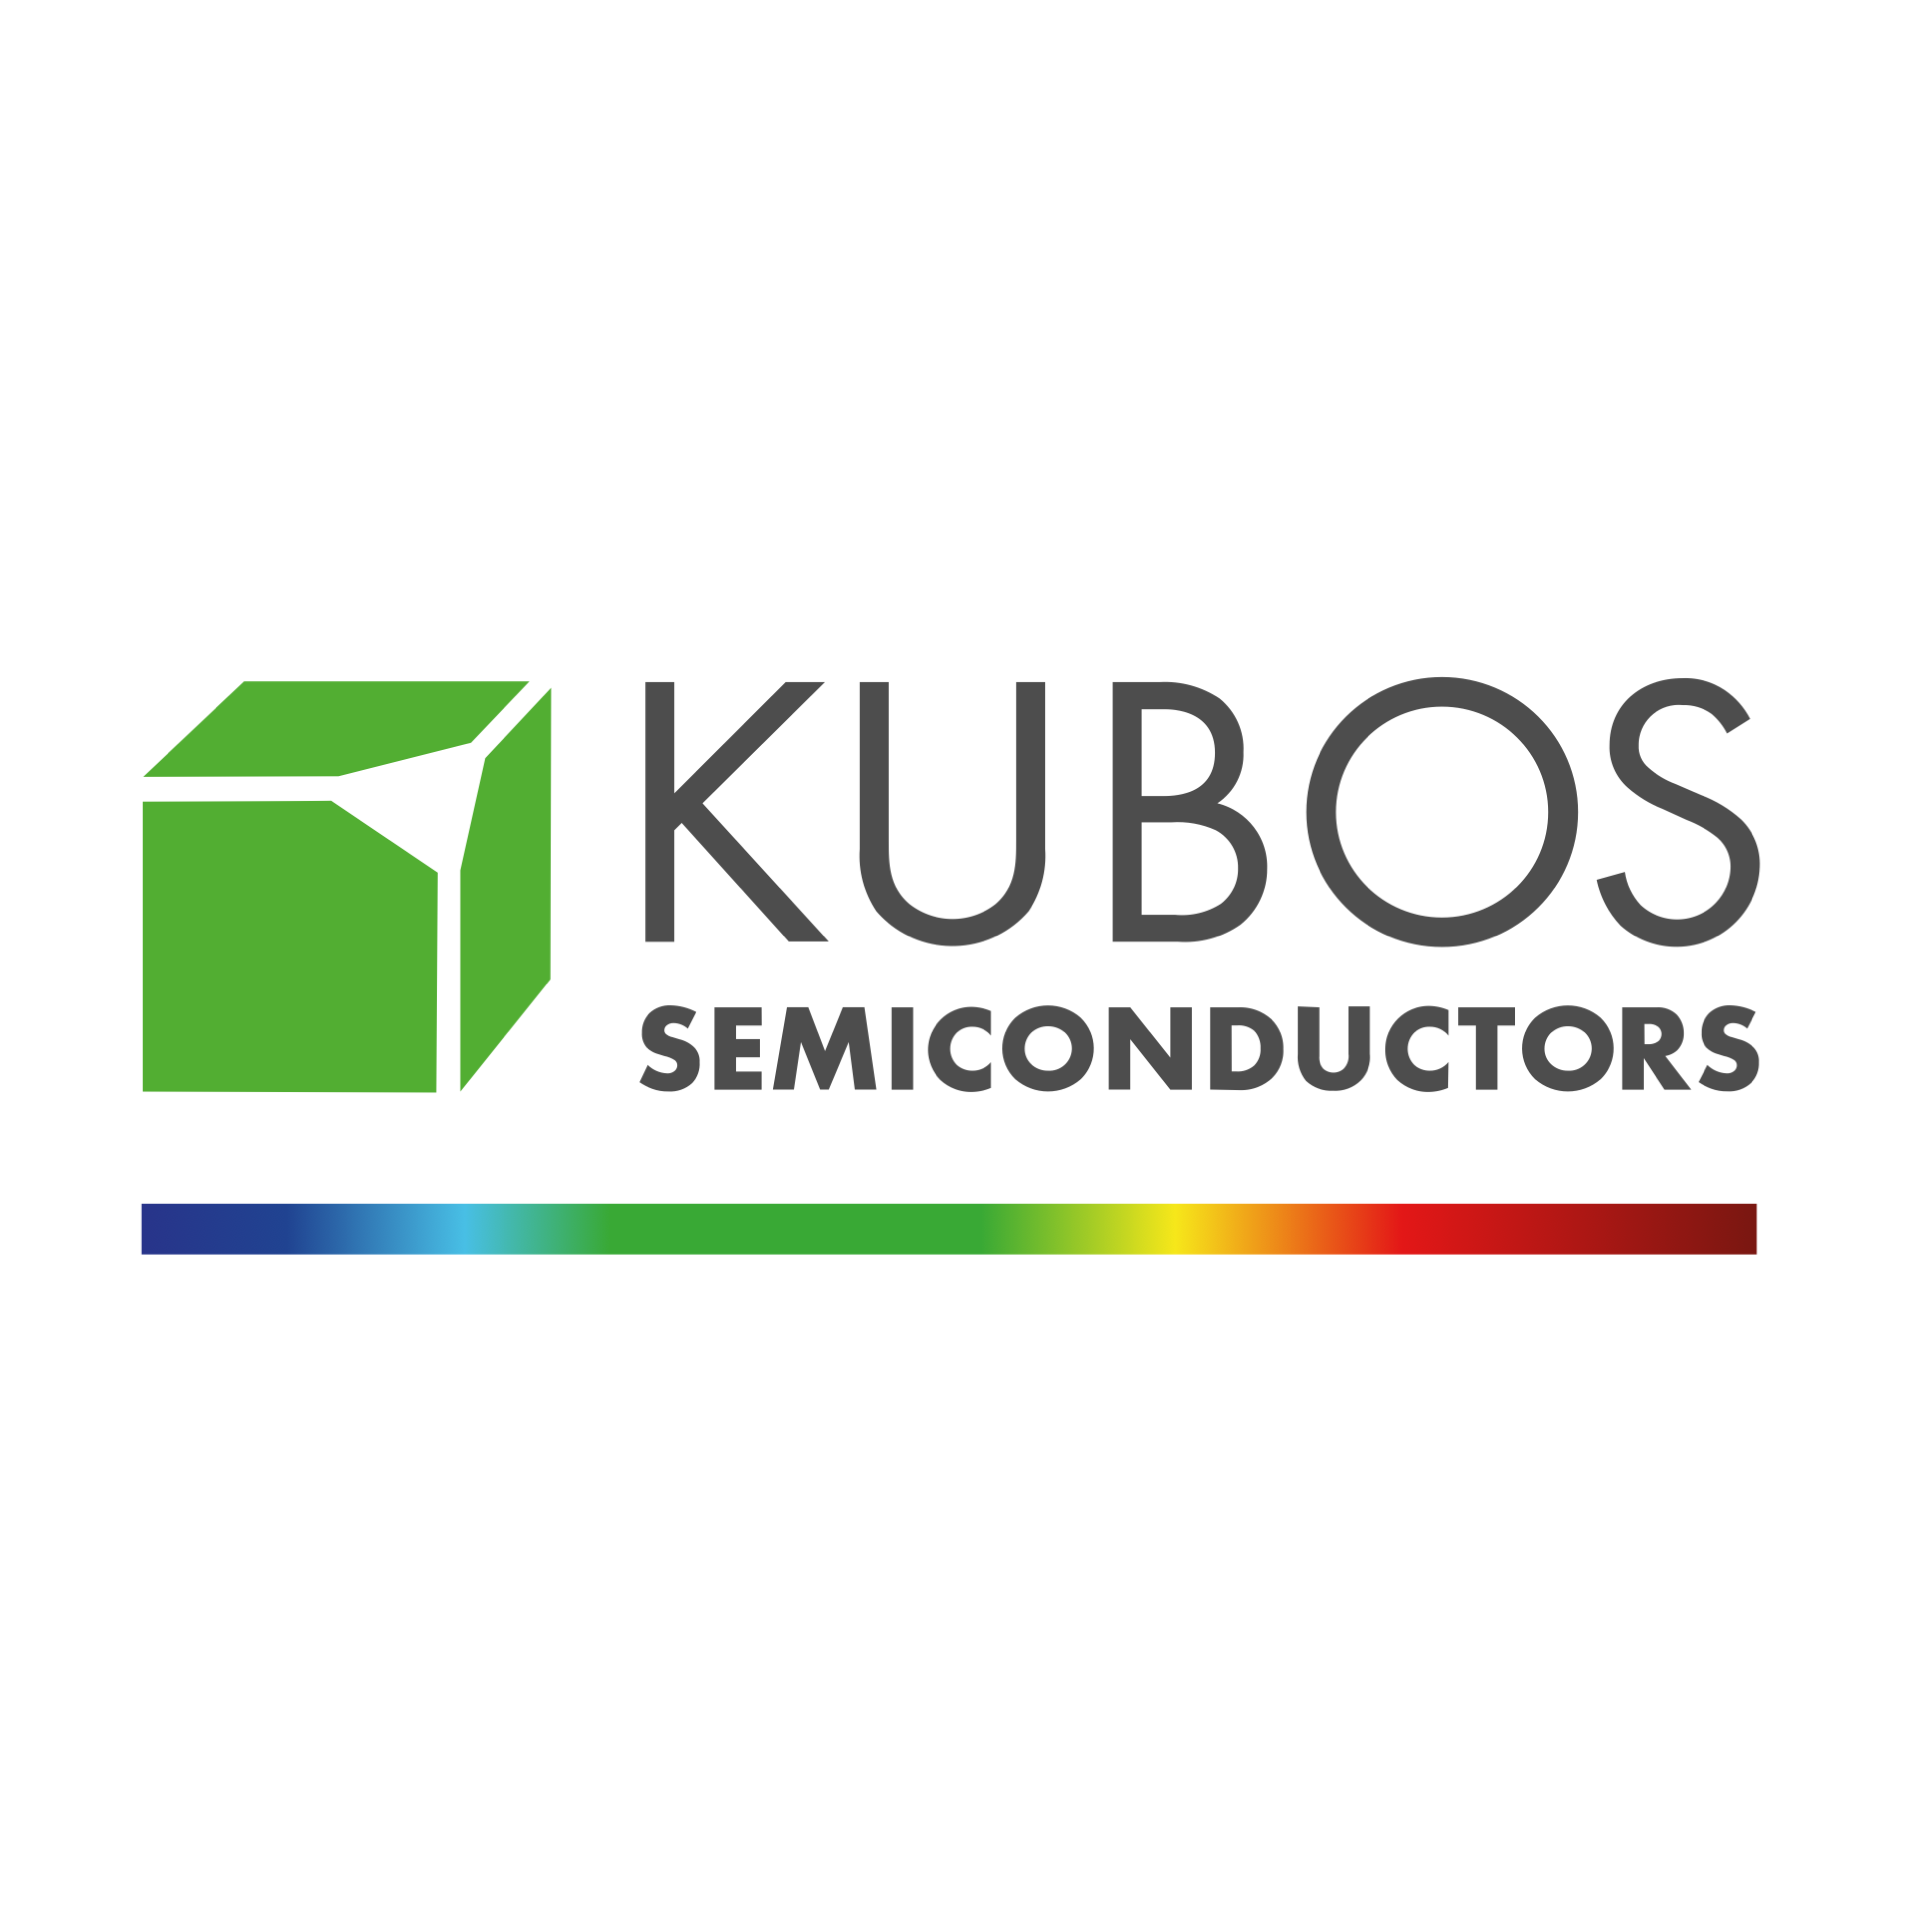 Kubos Semicondutors Ltd